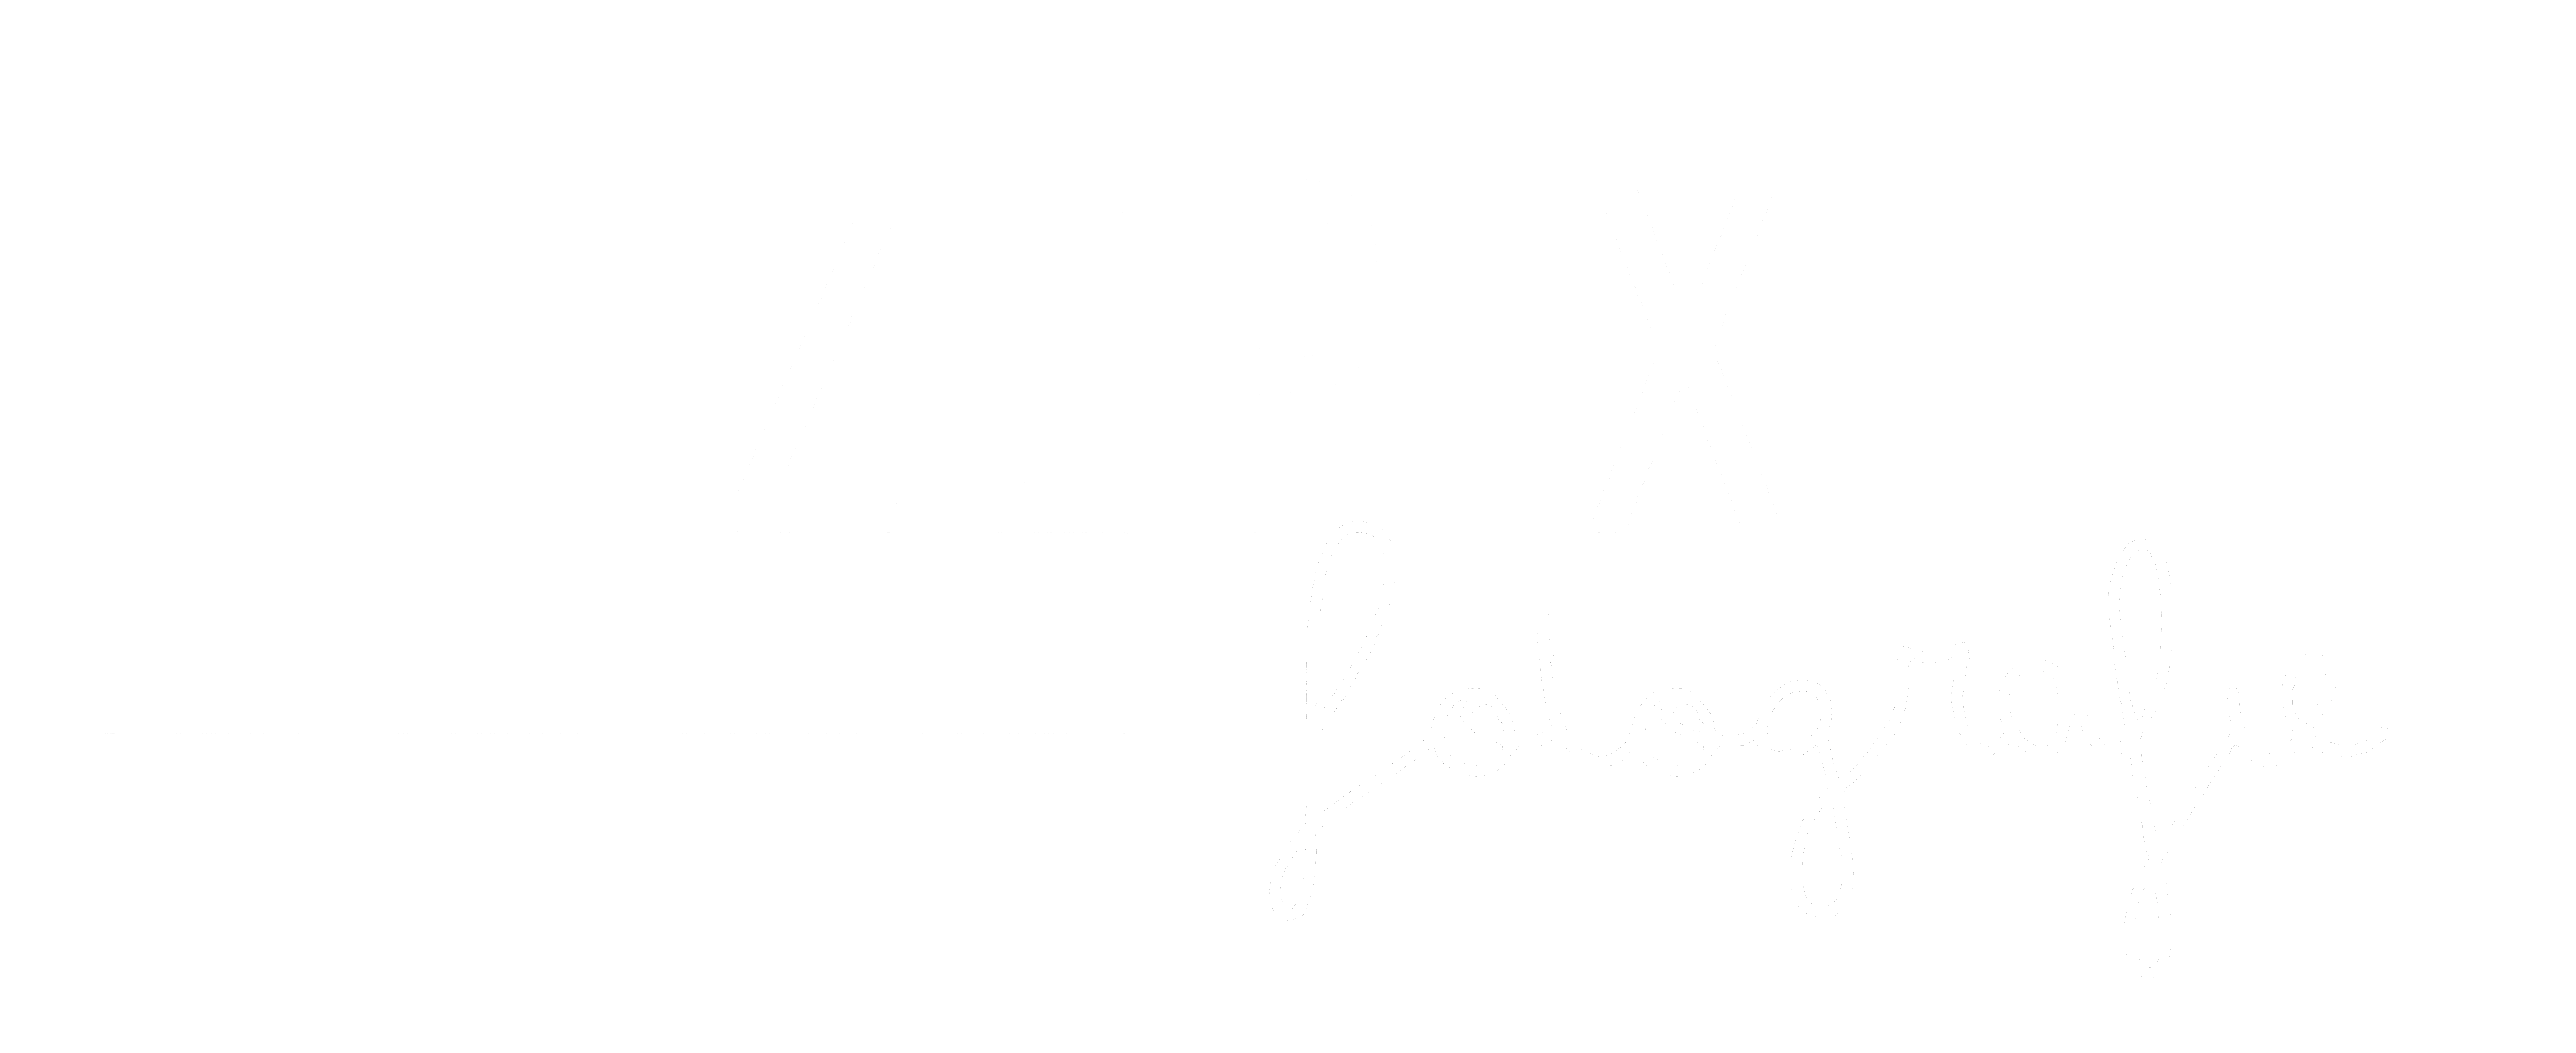 NyzePix Fotografie Logo